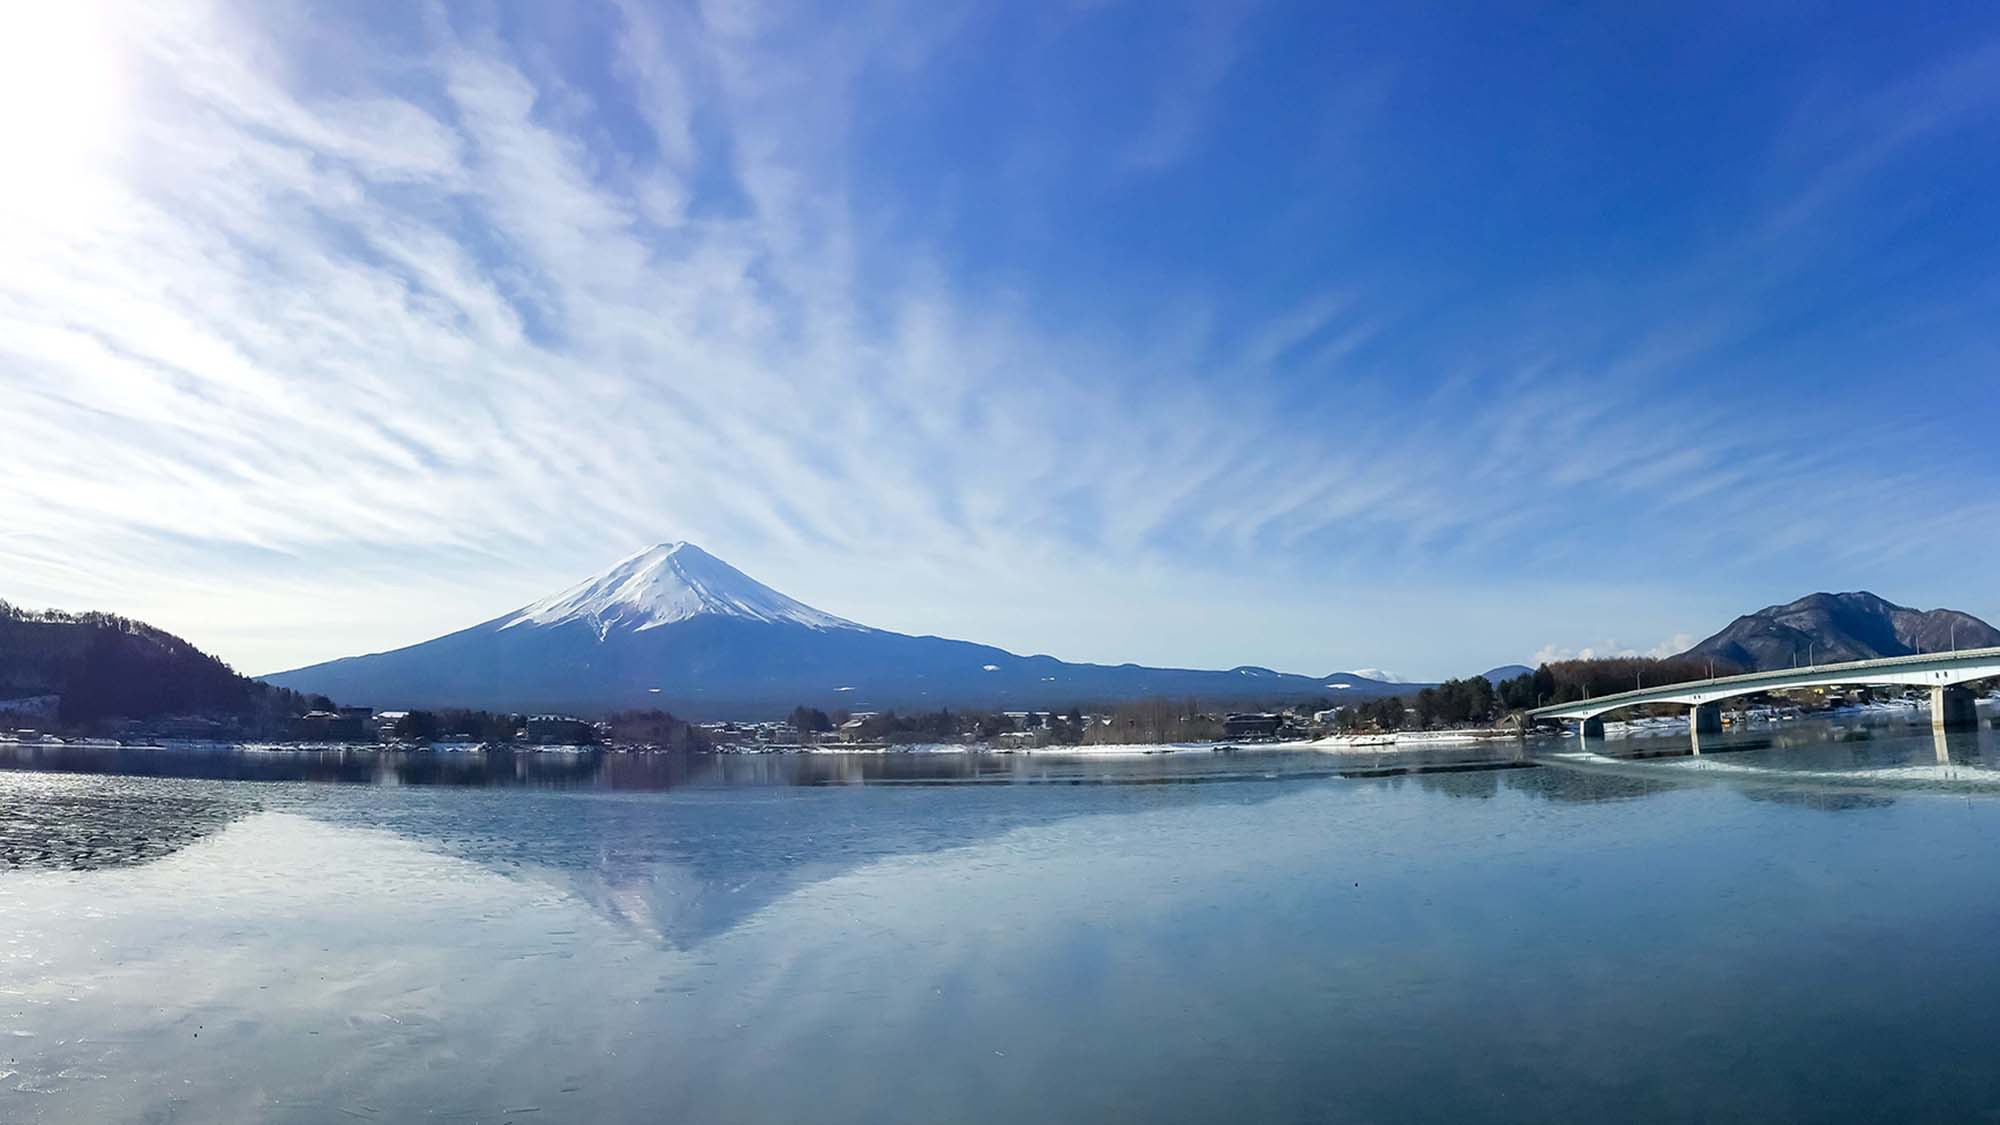 ・河口湖から臨む富士山は圧巻です